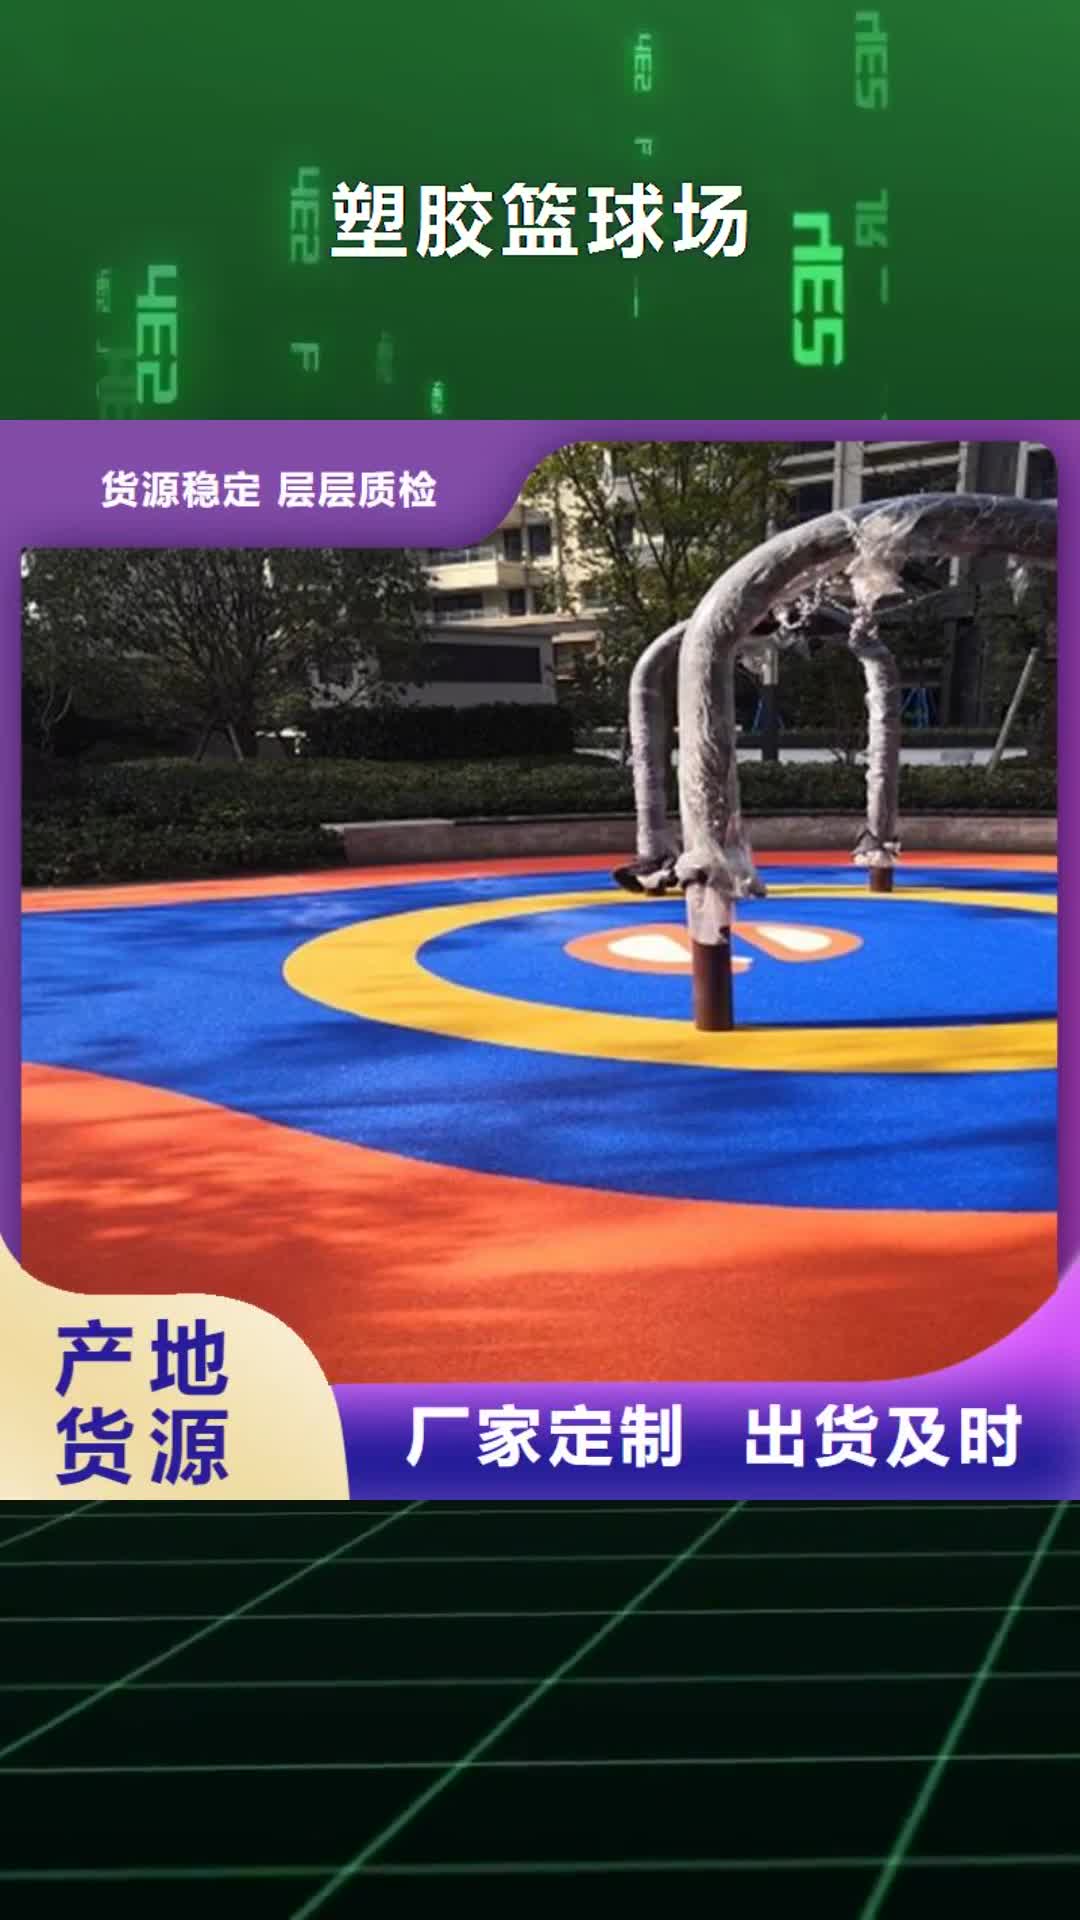 惠州【塑胶篮球场】-塑胶跑道的简单介绍